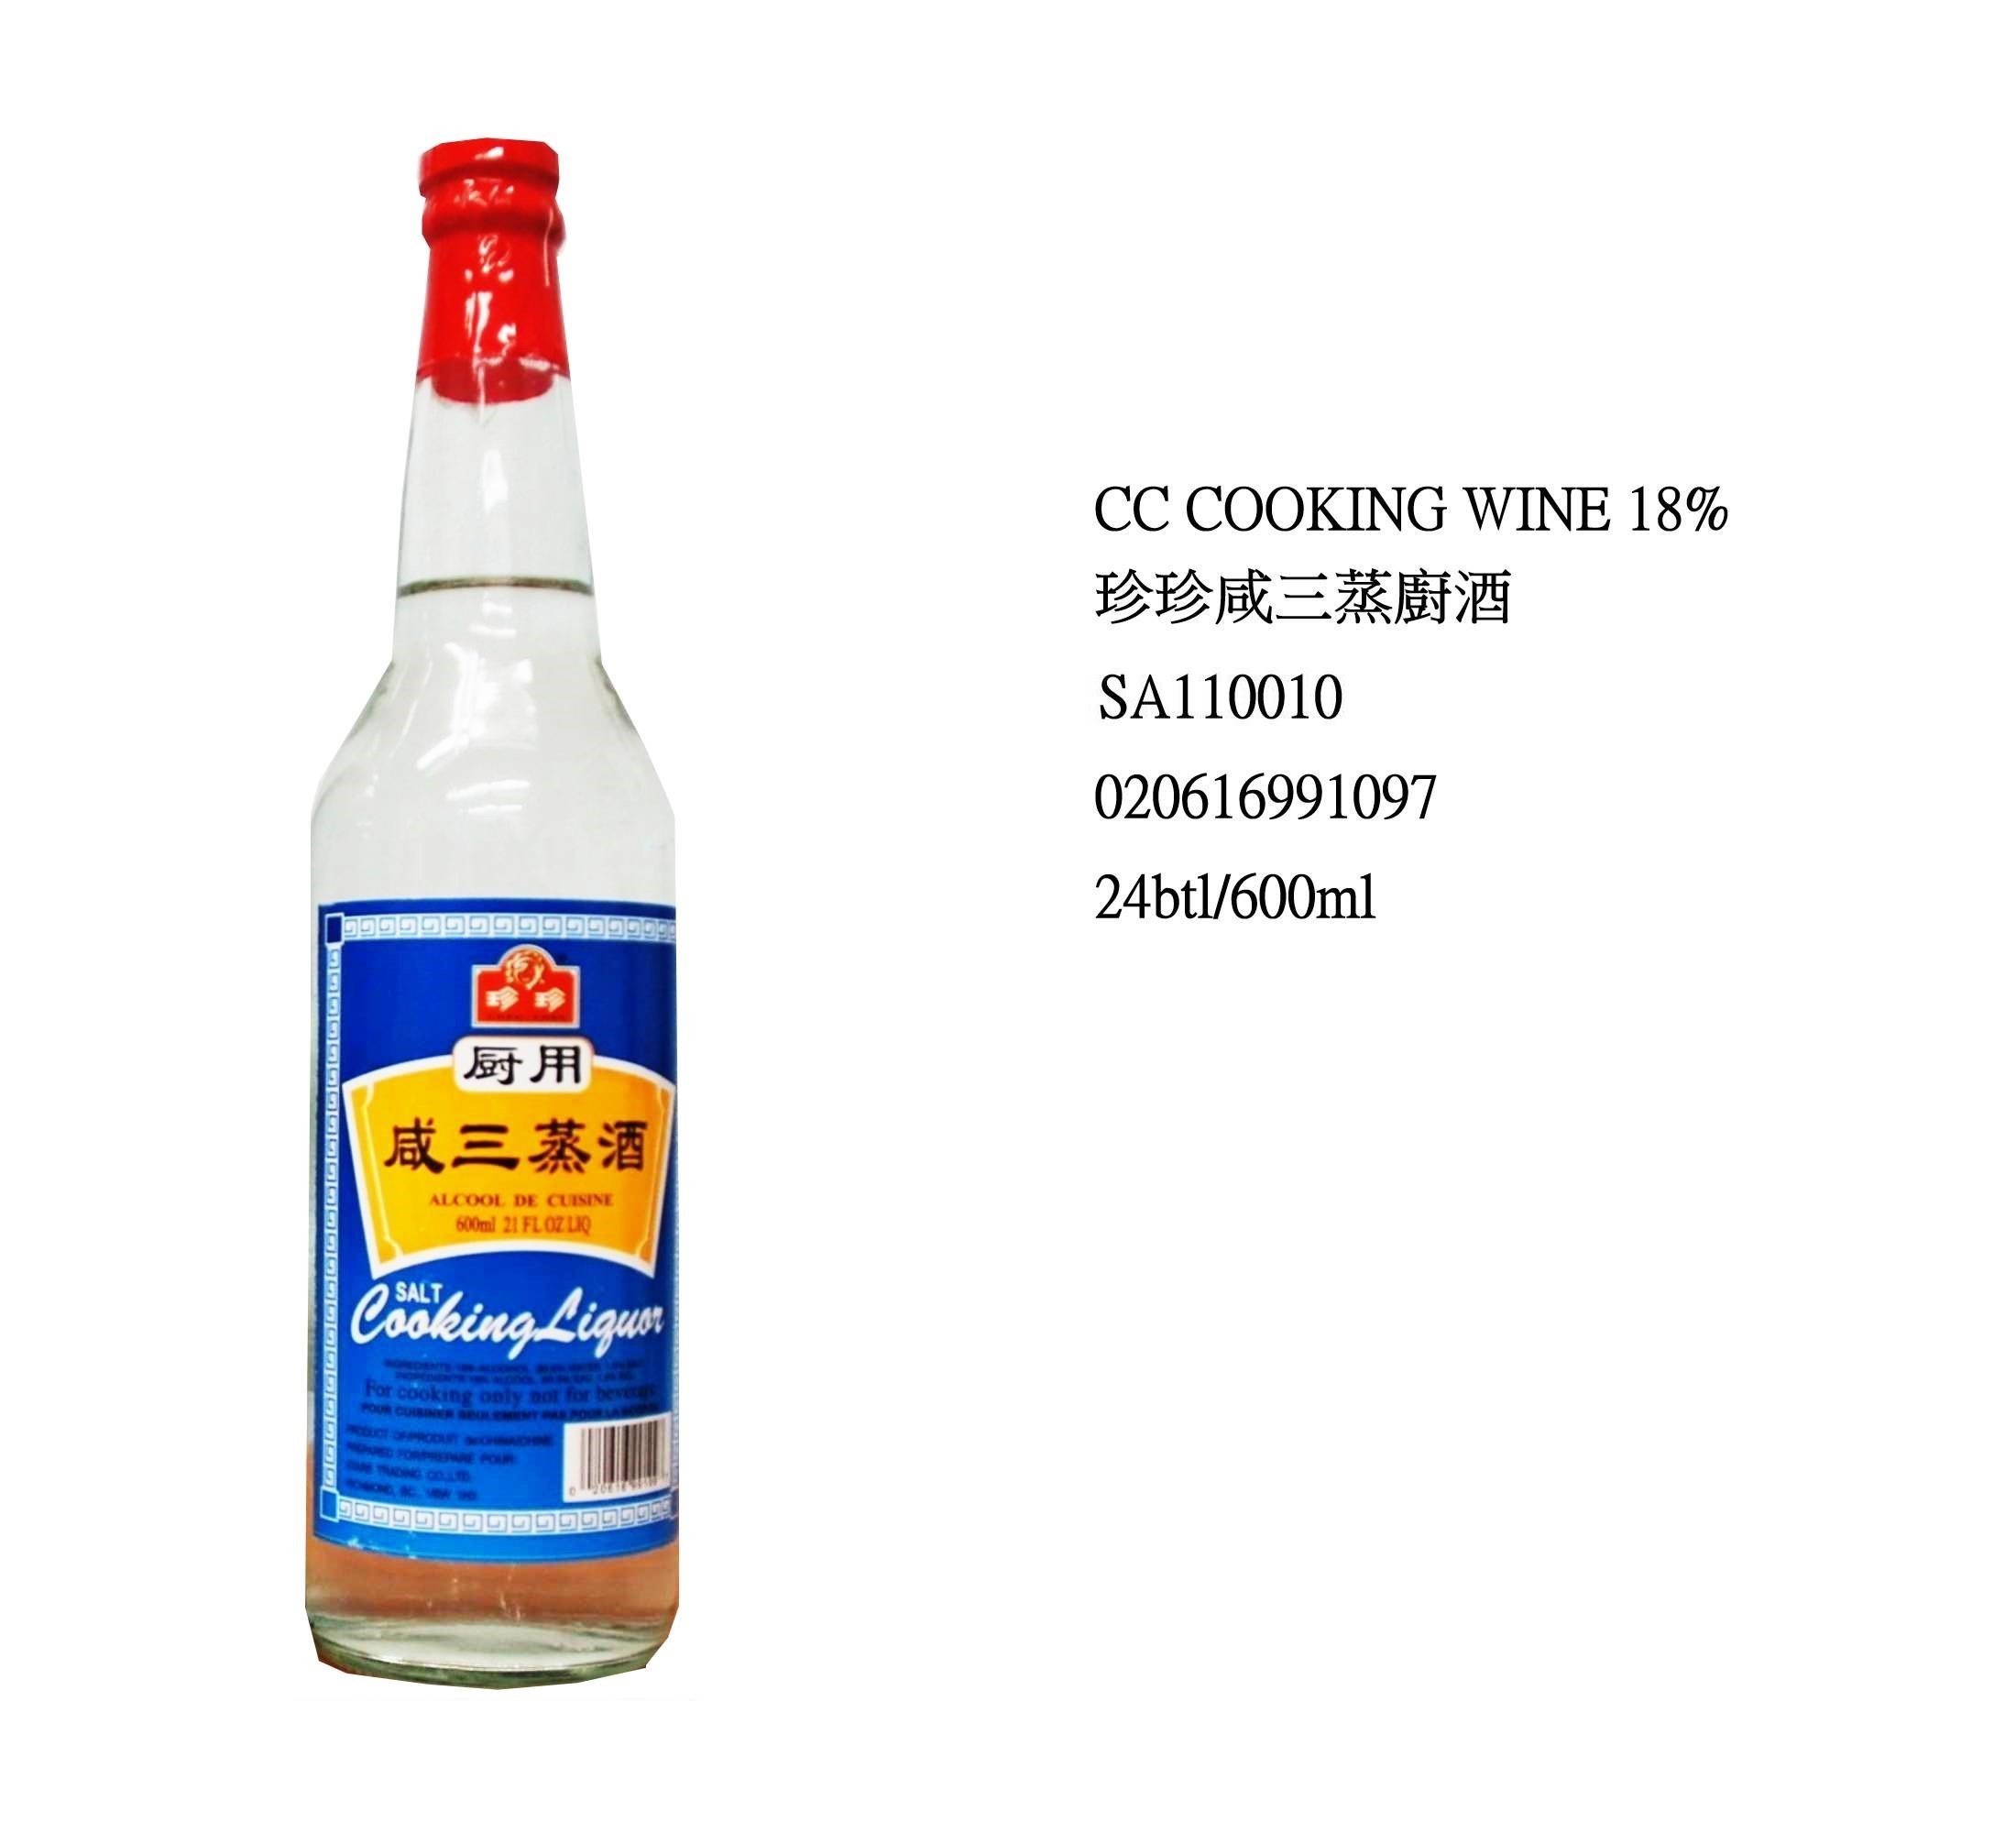 CHEN CHEN COOKING WINE 18% SA110010